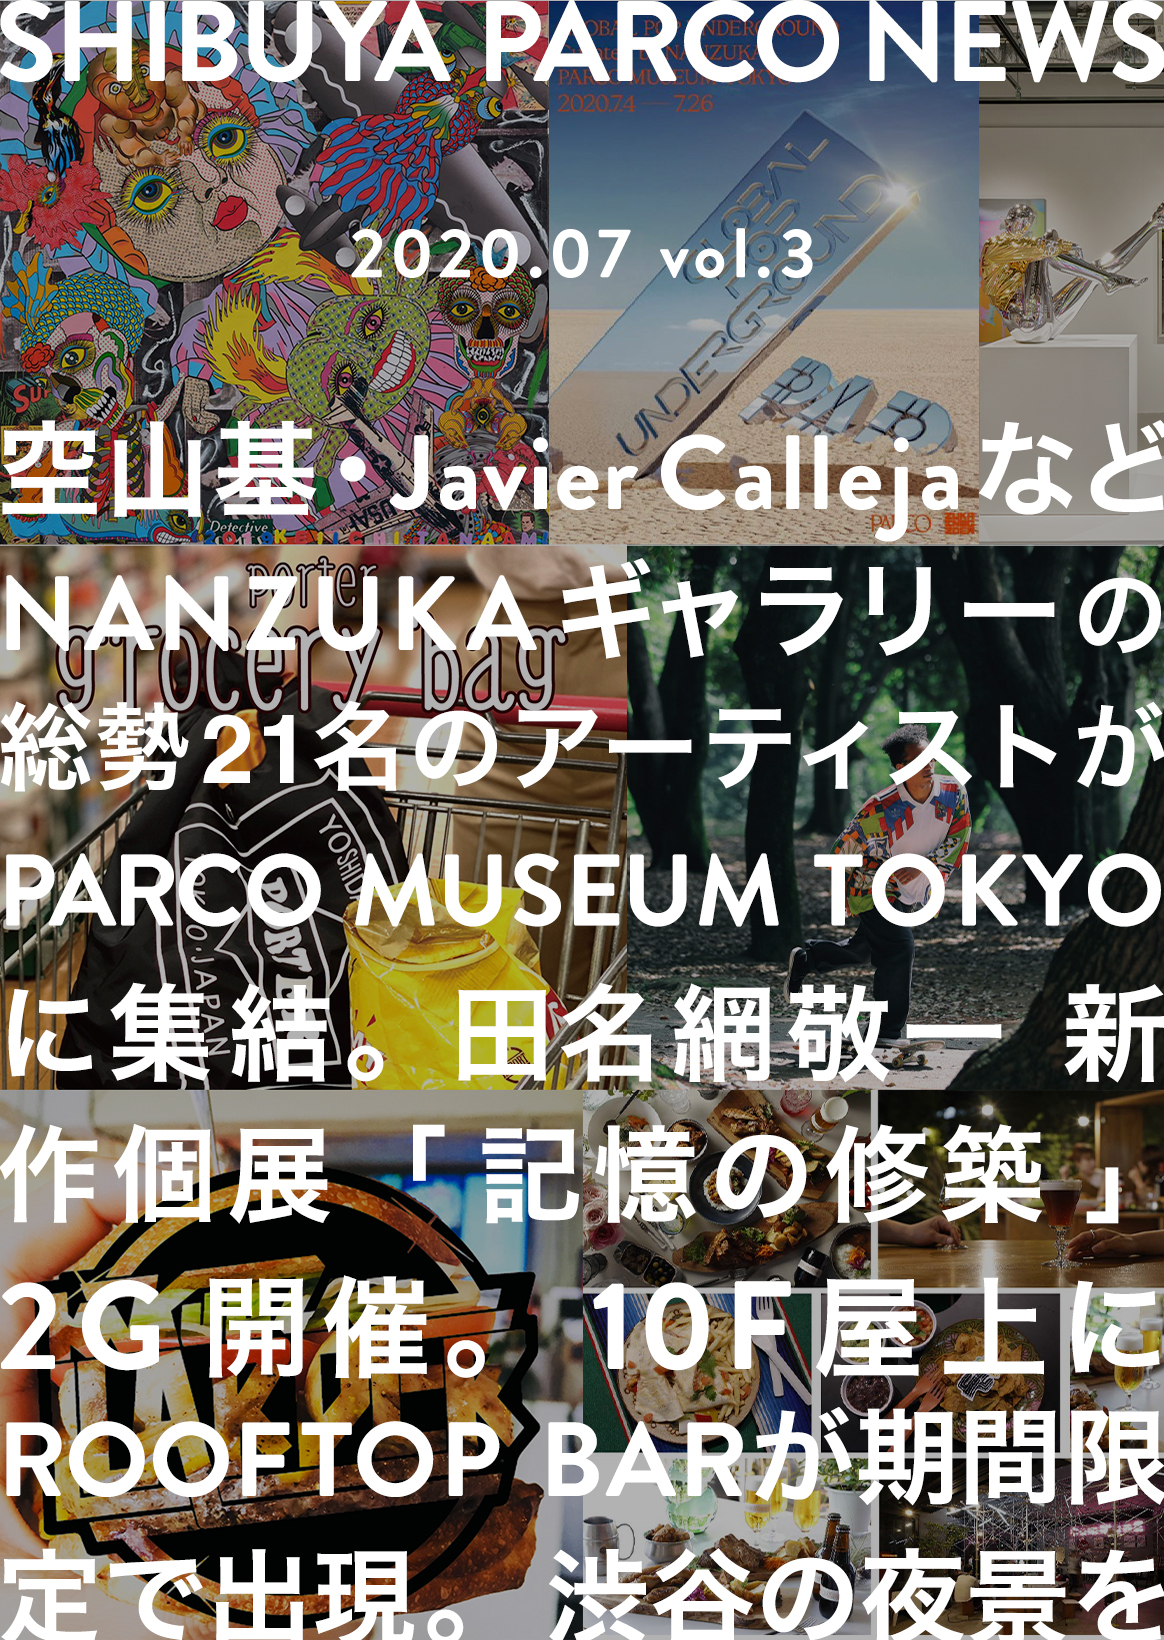 SHIBUYA PARCO NEWS-2020.7-vol.3